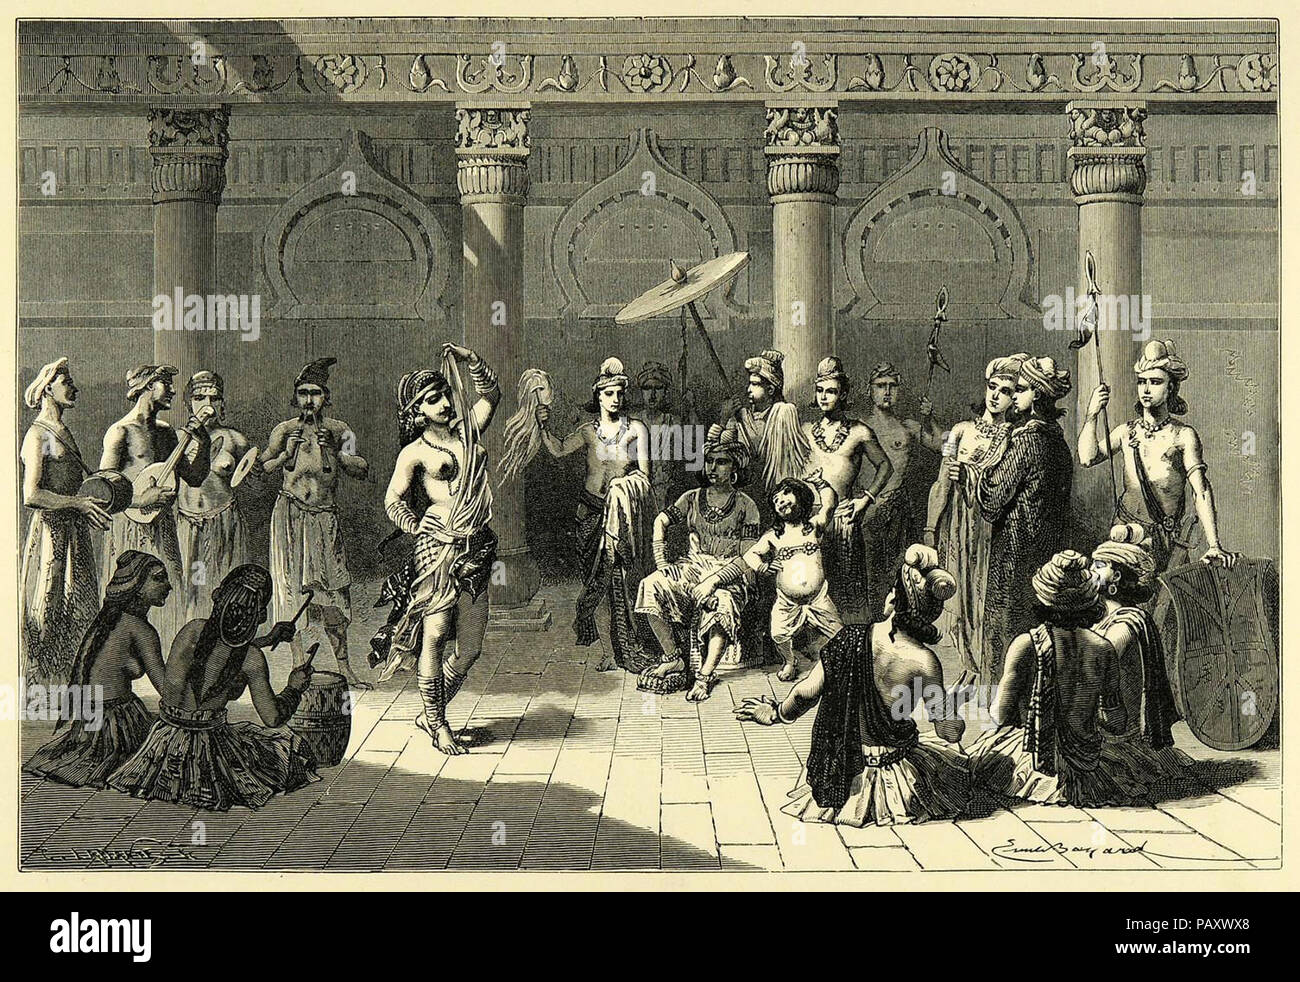 Una visione di indiano antico della vita di corte, utilizzando motivi dal Sanchi (incisione su legno, 1878). Foto Stock